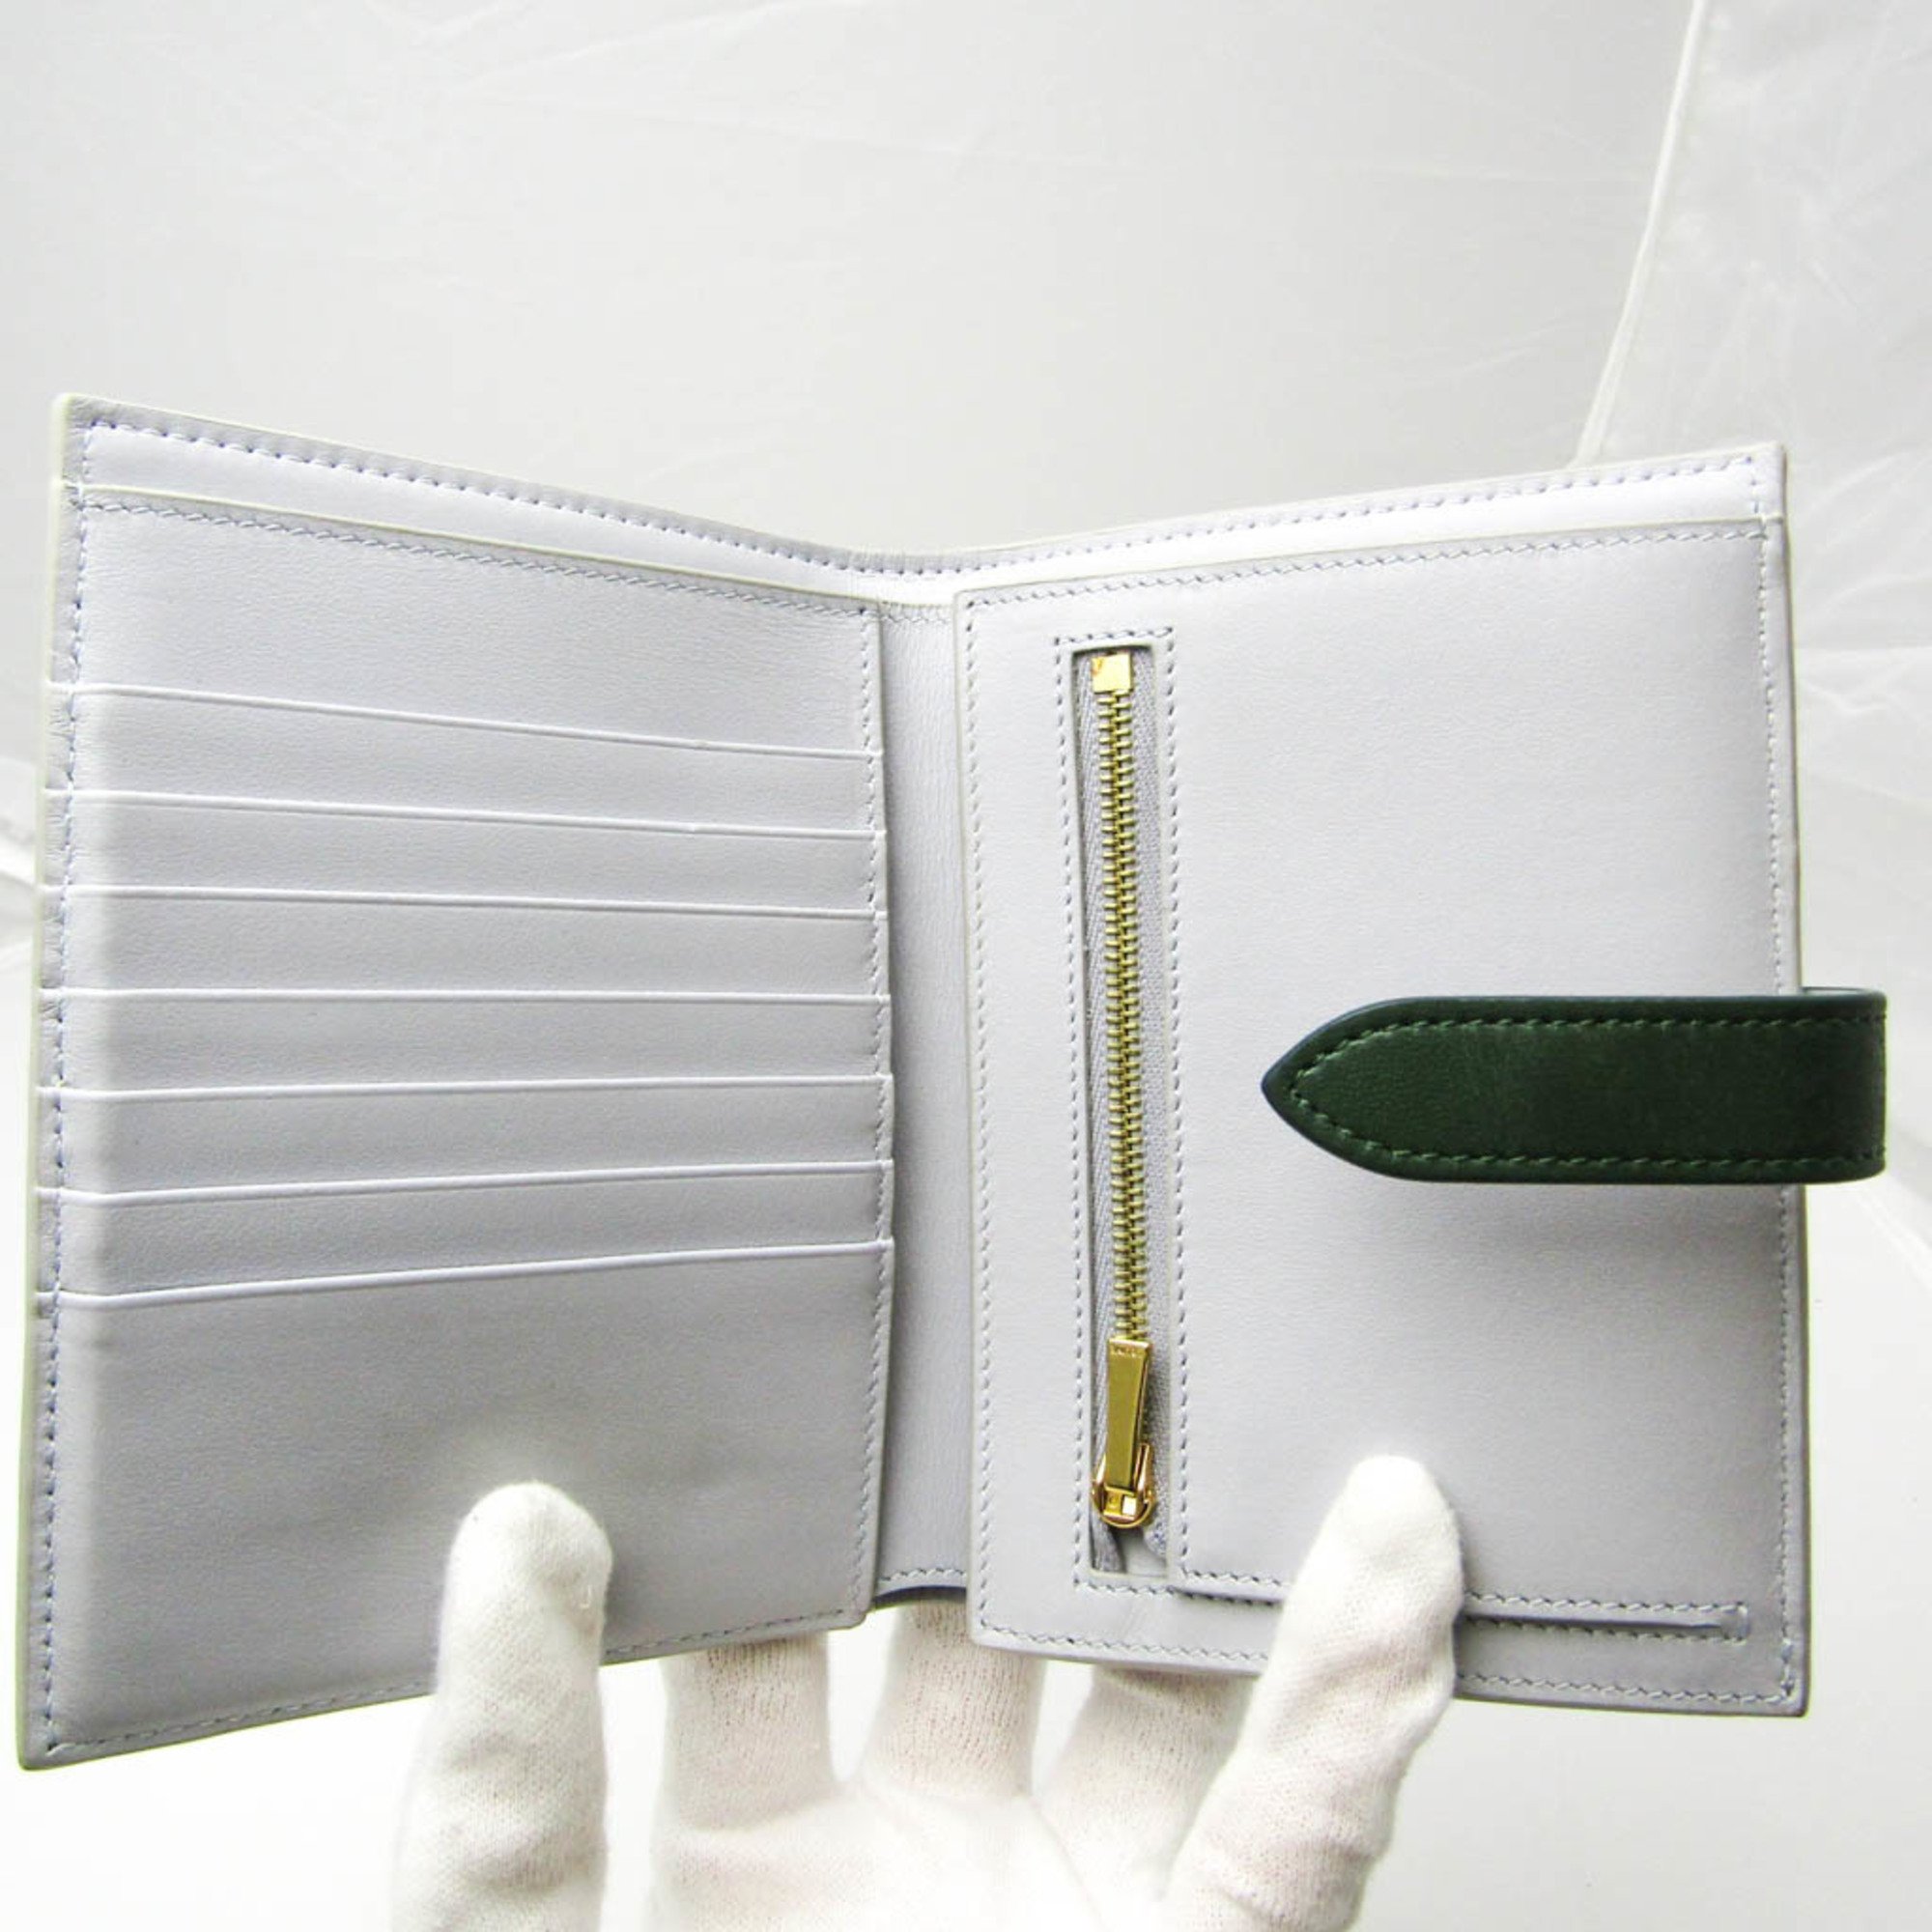 CELINE 二つ折り財布 ミディアムストラップ レザー グレー/ホワイトウォレット